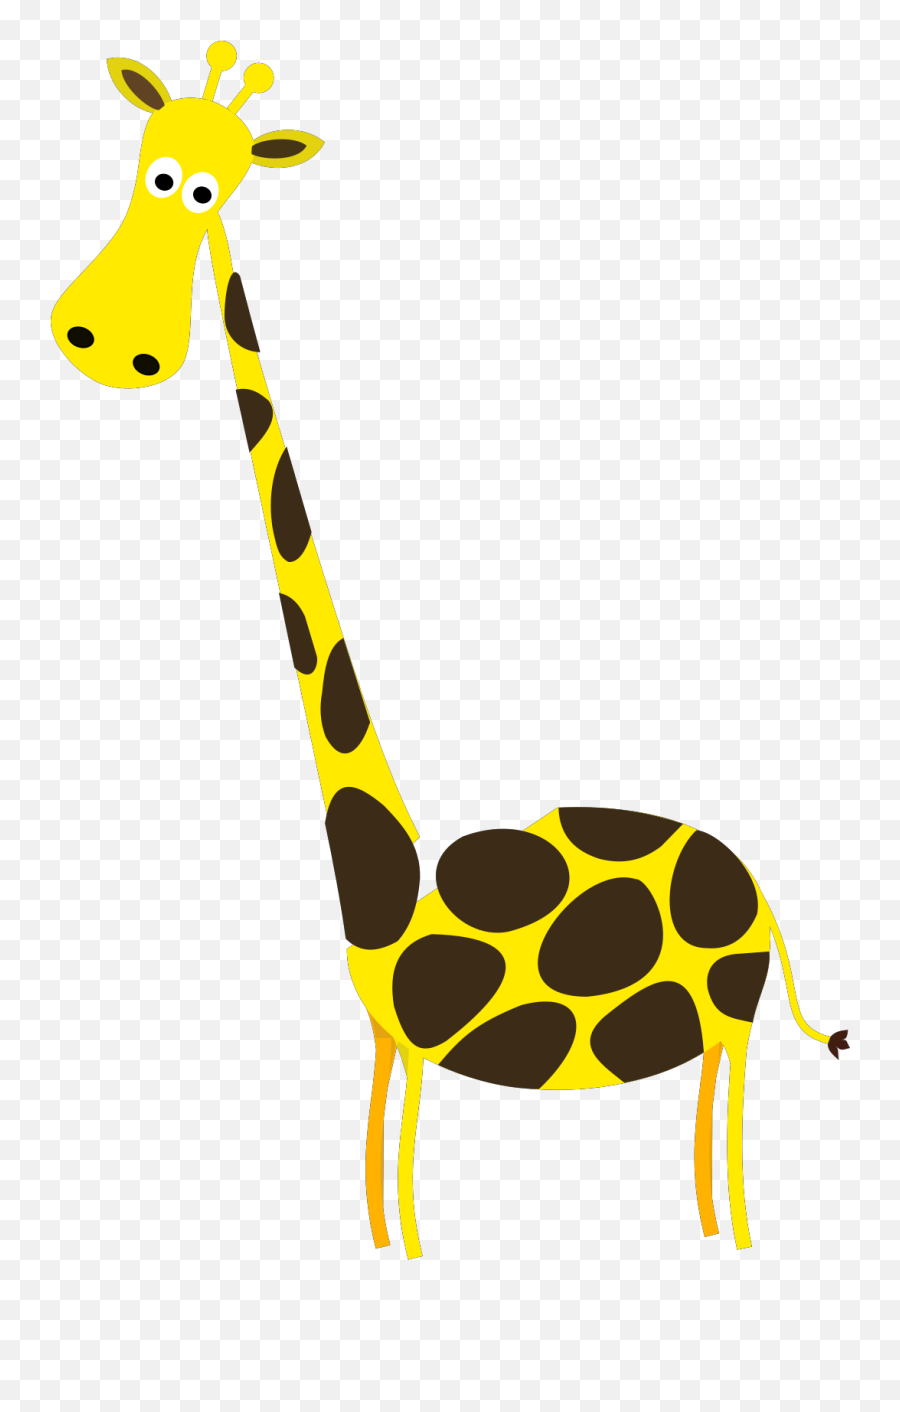 Cartoon Giraffe Svg Vector Clip Art - Svg Giraffe Clipart Transparent Background Png,Giraffe Icon